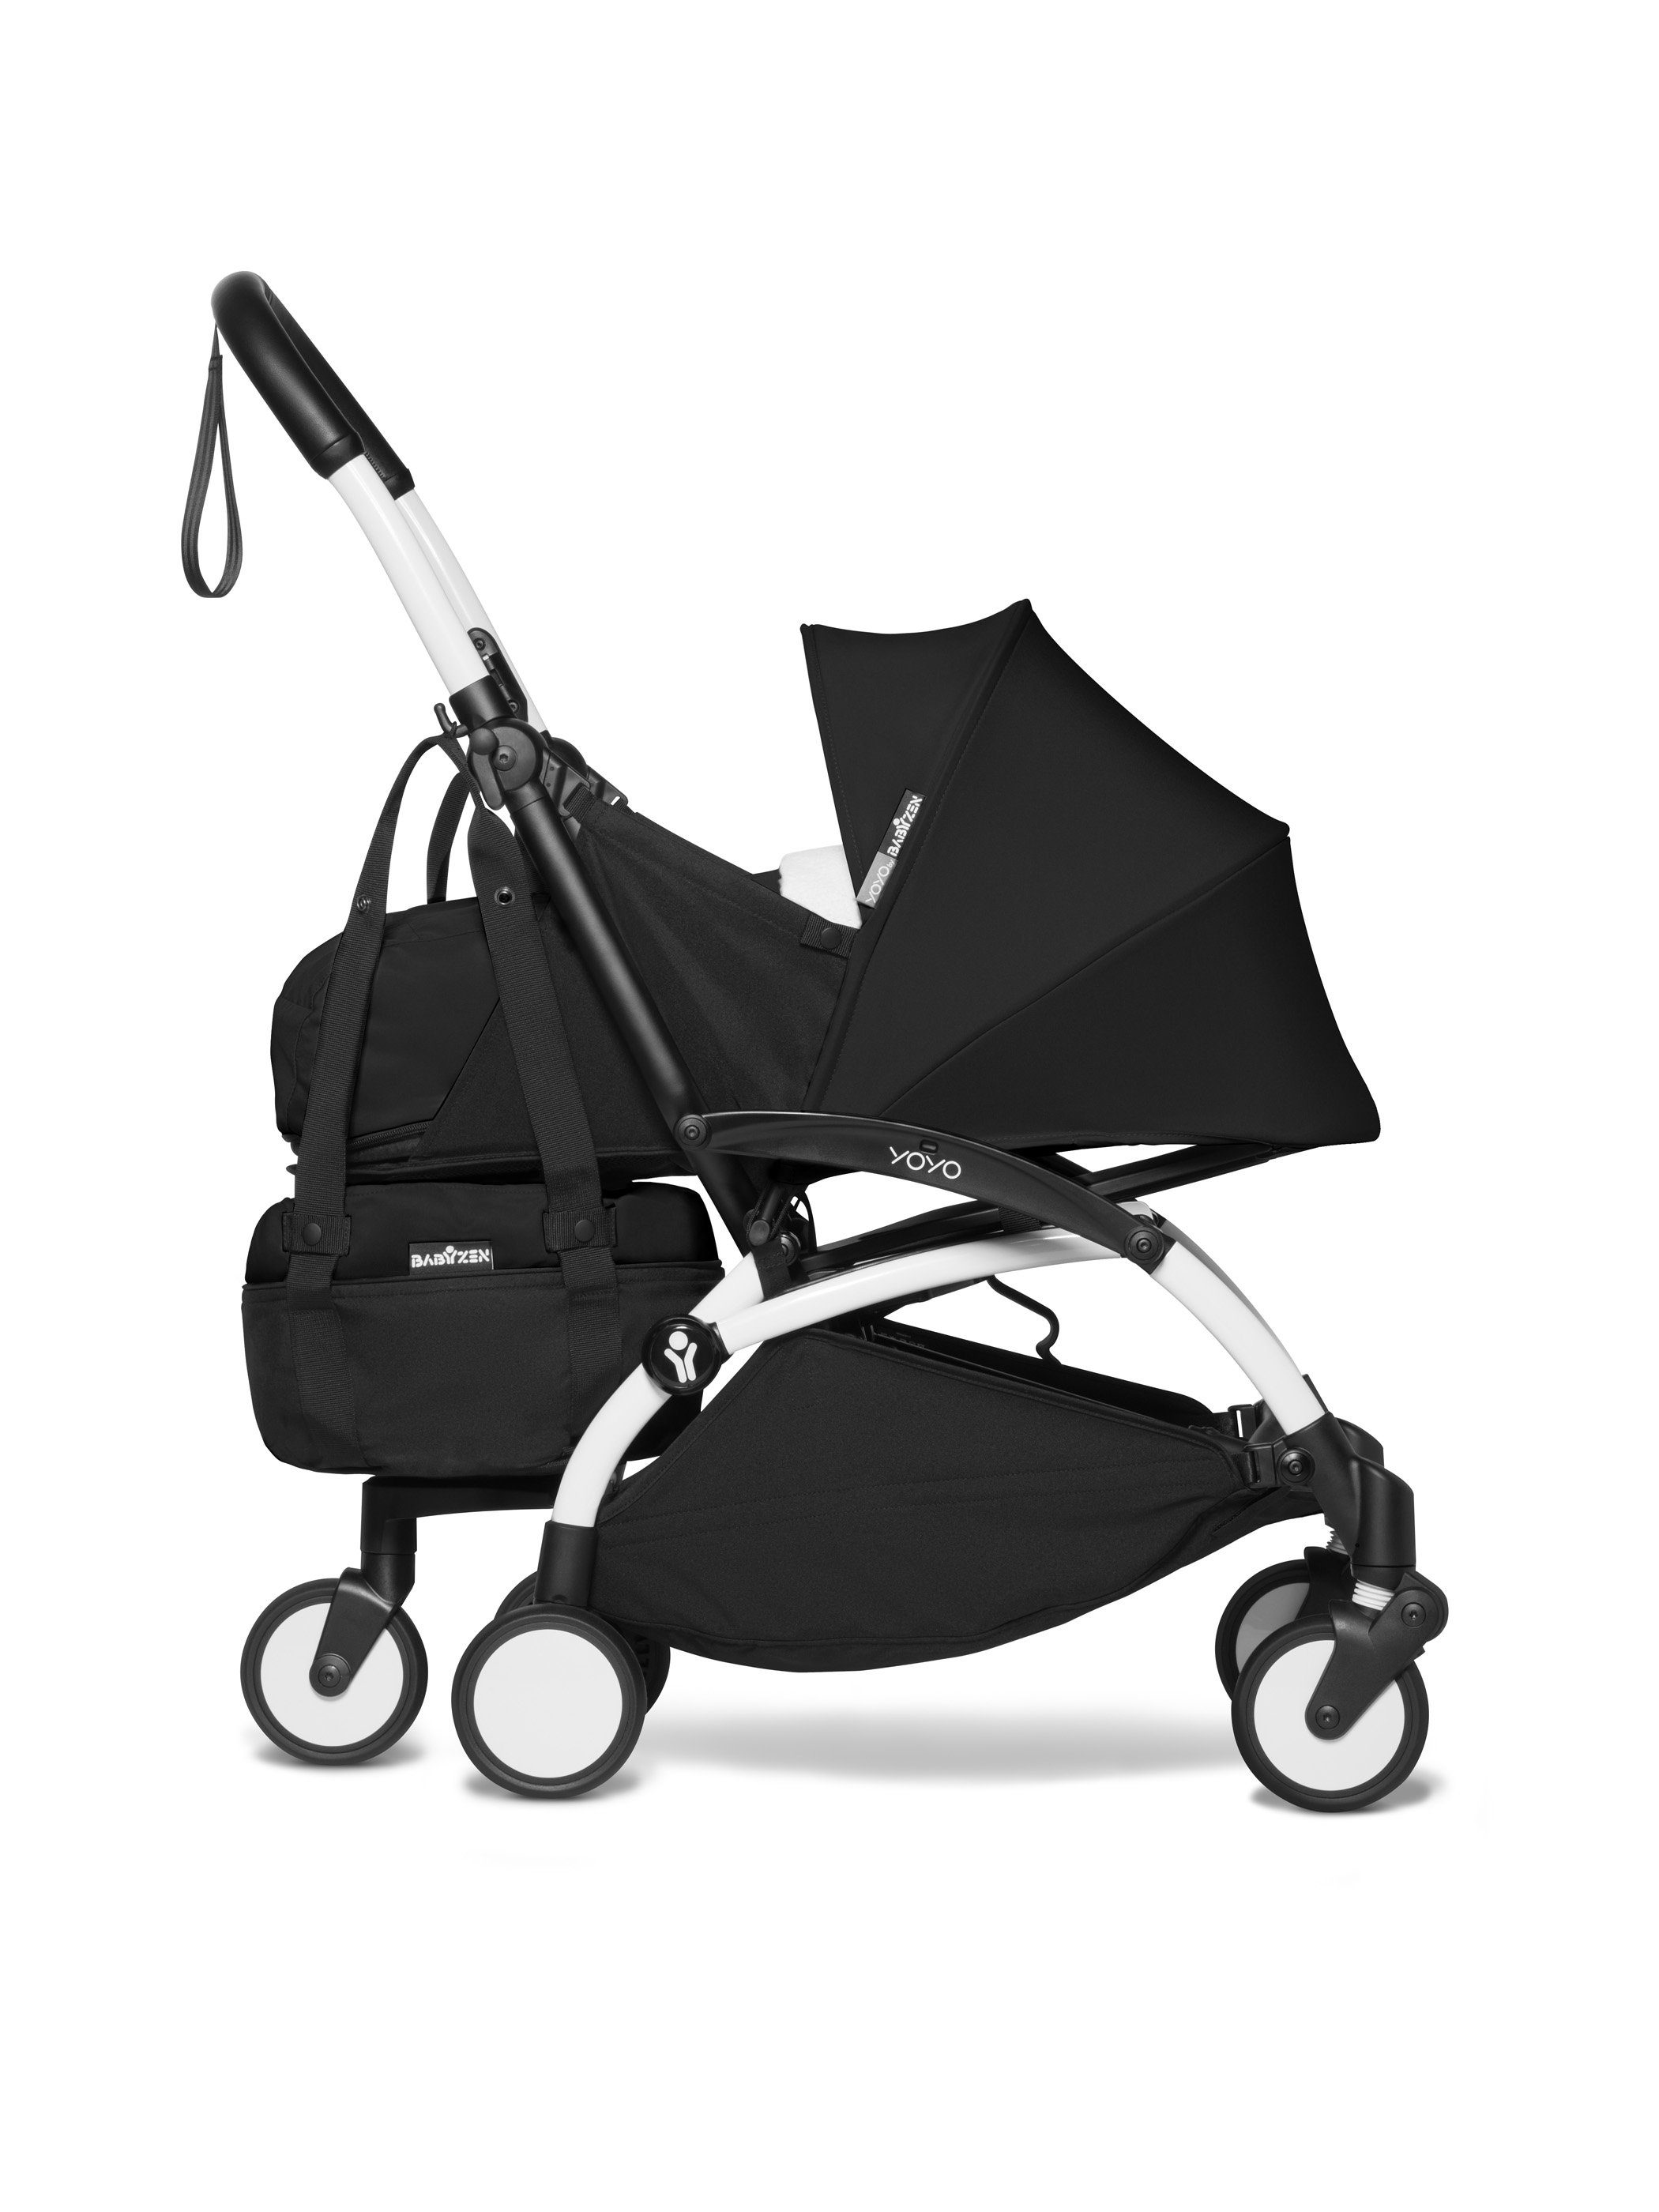 Kinderwagen-Tasche Bag-Einkaufstasche YOYO Gestell Black BABYZEN YOYO für passend